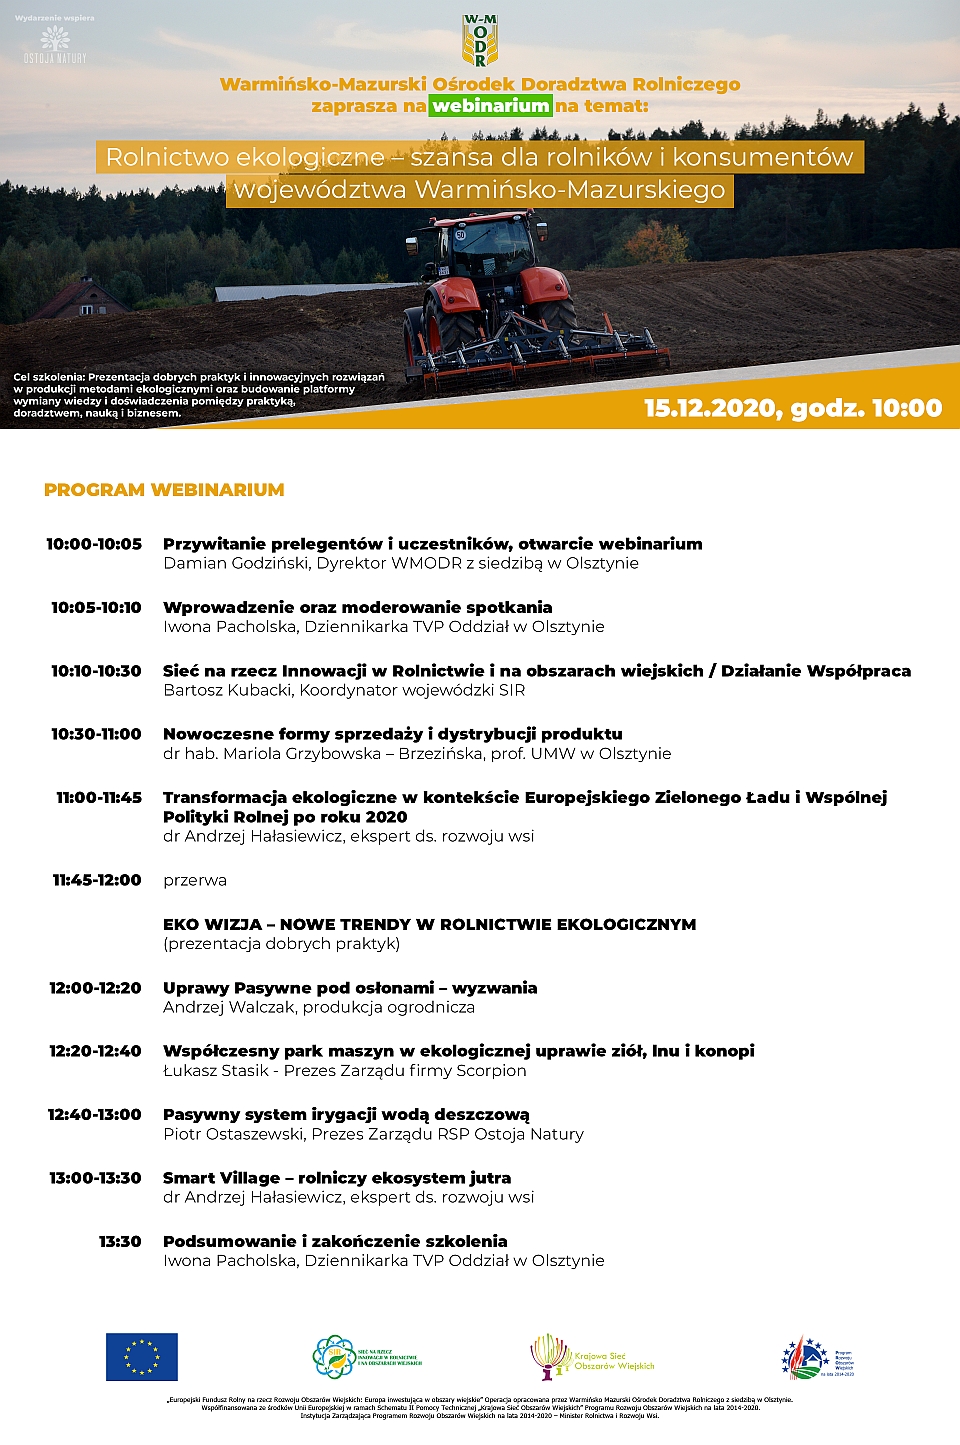 Plakat "Rolnictwo ekologiczne - szansa dla rolników i konsumentów województwa Warmińsko-Mazurskiego w dolnej części program webinarium